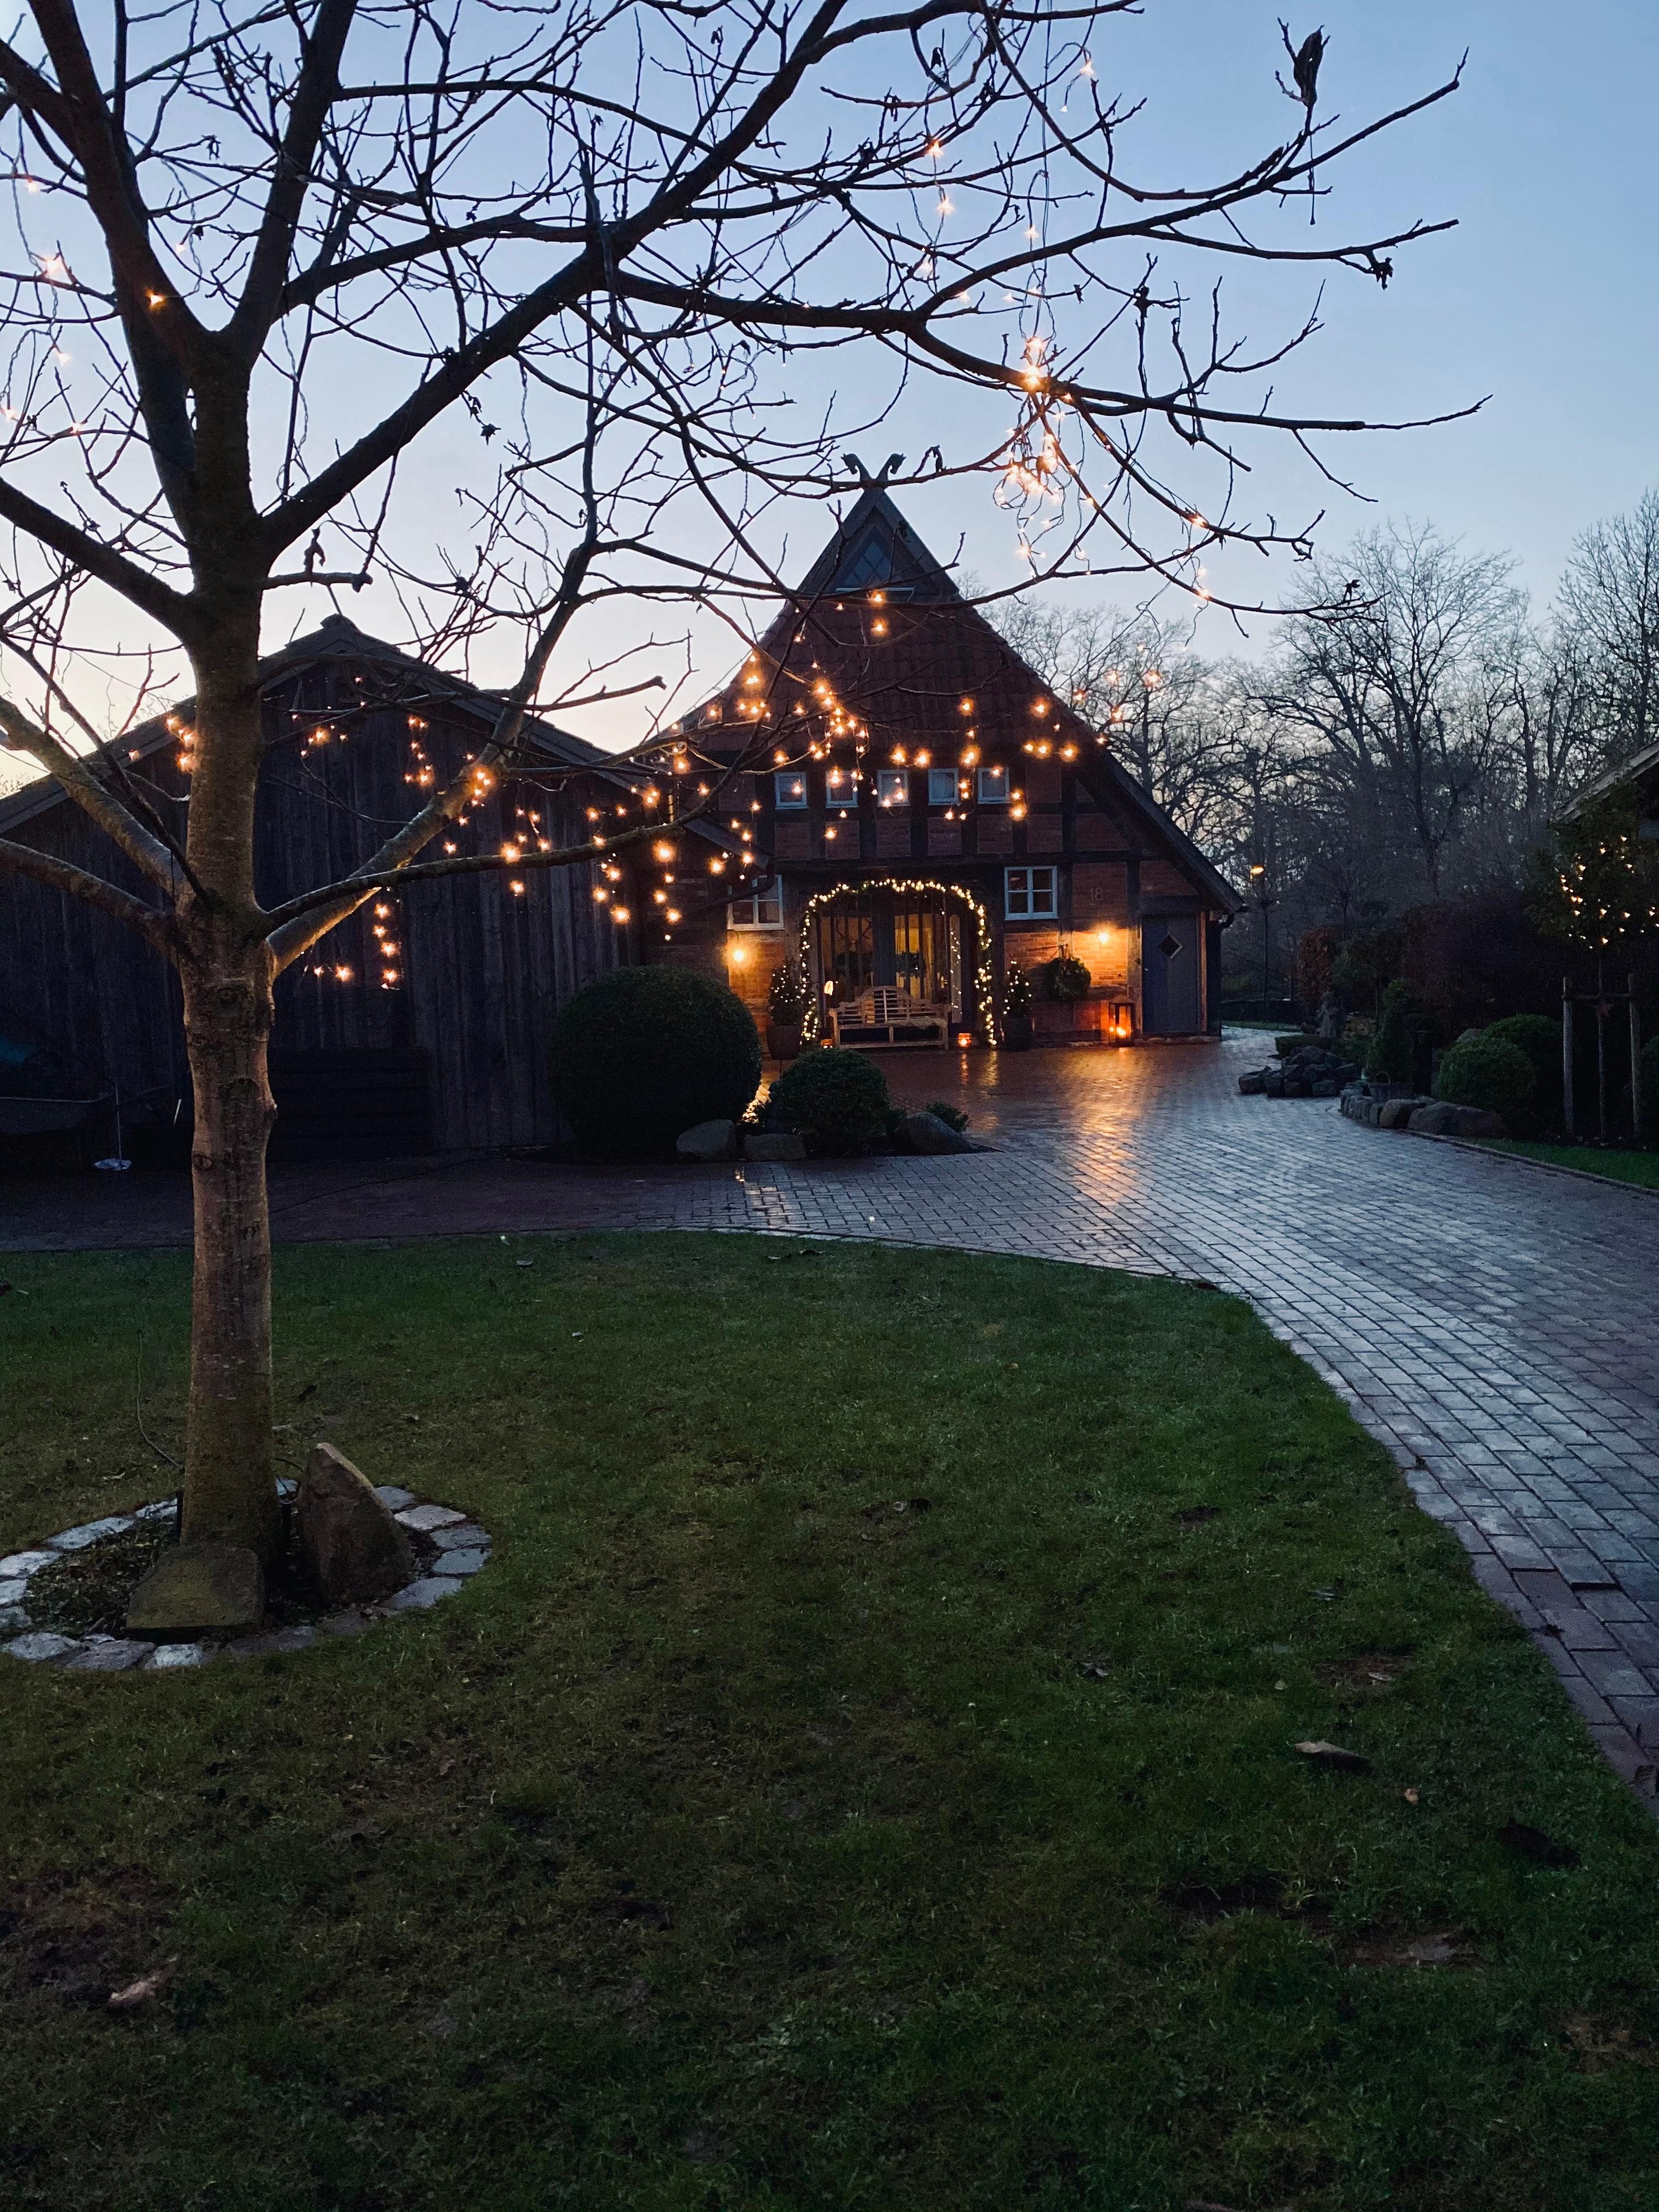 #weihnachtsbeleuchtung #fachwerkhaus #walnussbaum #außenbeleuchtung #lichterkette #bauernhaus #landhaus